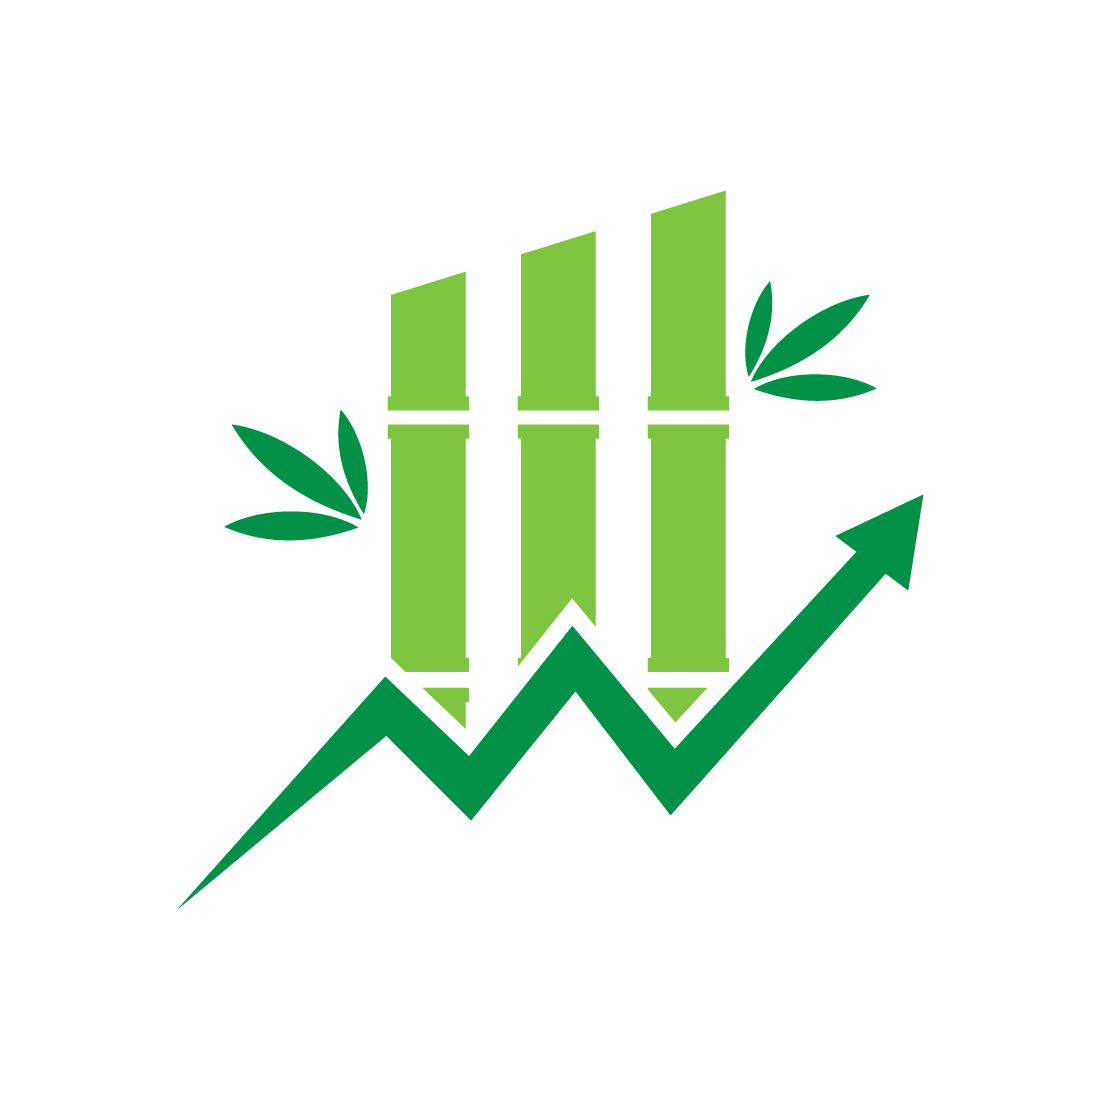 Bamboo Financial logo design, Vector design template preview image.